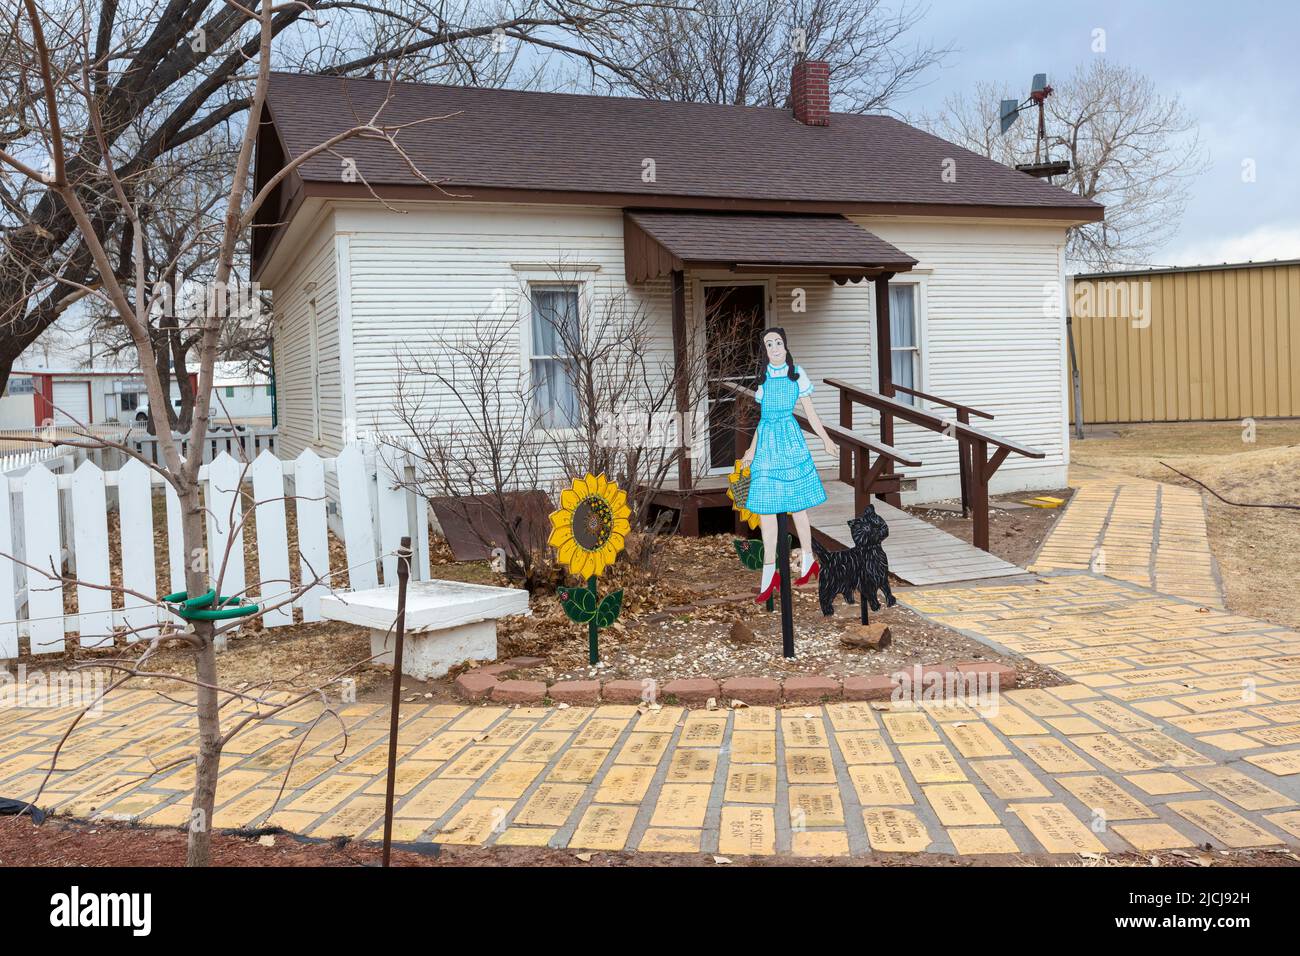 Liberal, Kansas - Dorothys Haus und das Land von Oz, eine Touristenattraktion nach dem Vorbild des Films „der Zauberer von Oz“ aus dem Jahr 1939. Stockfoto